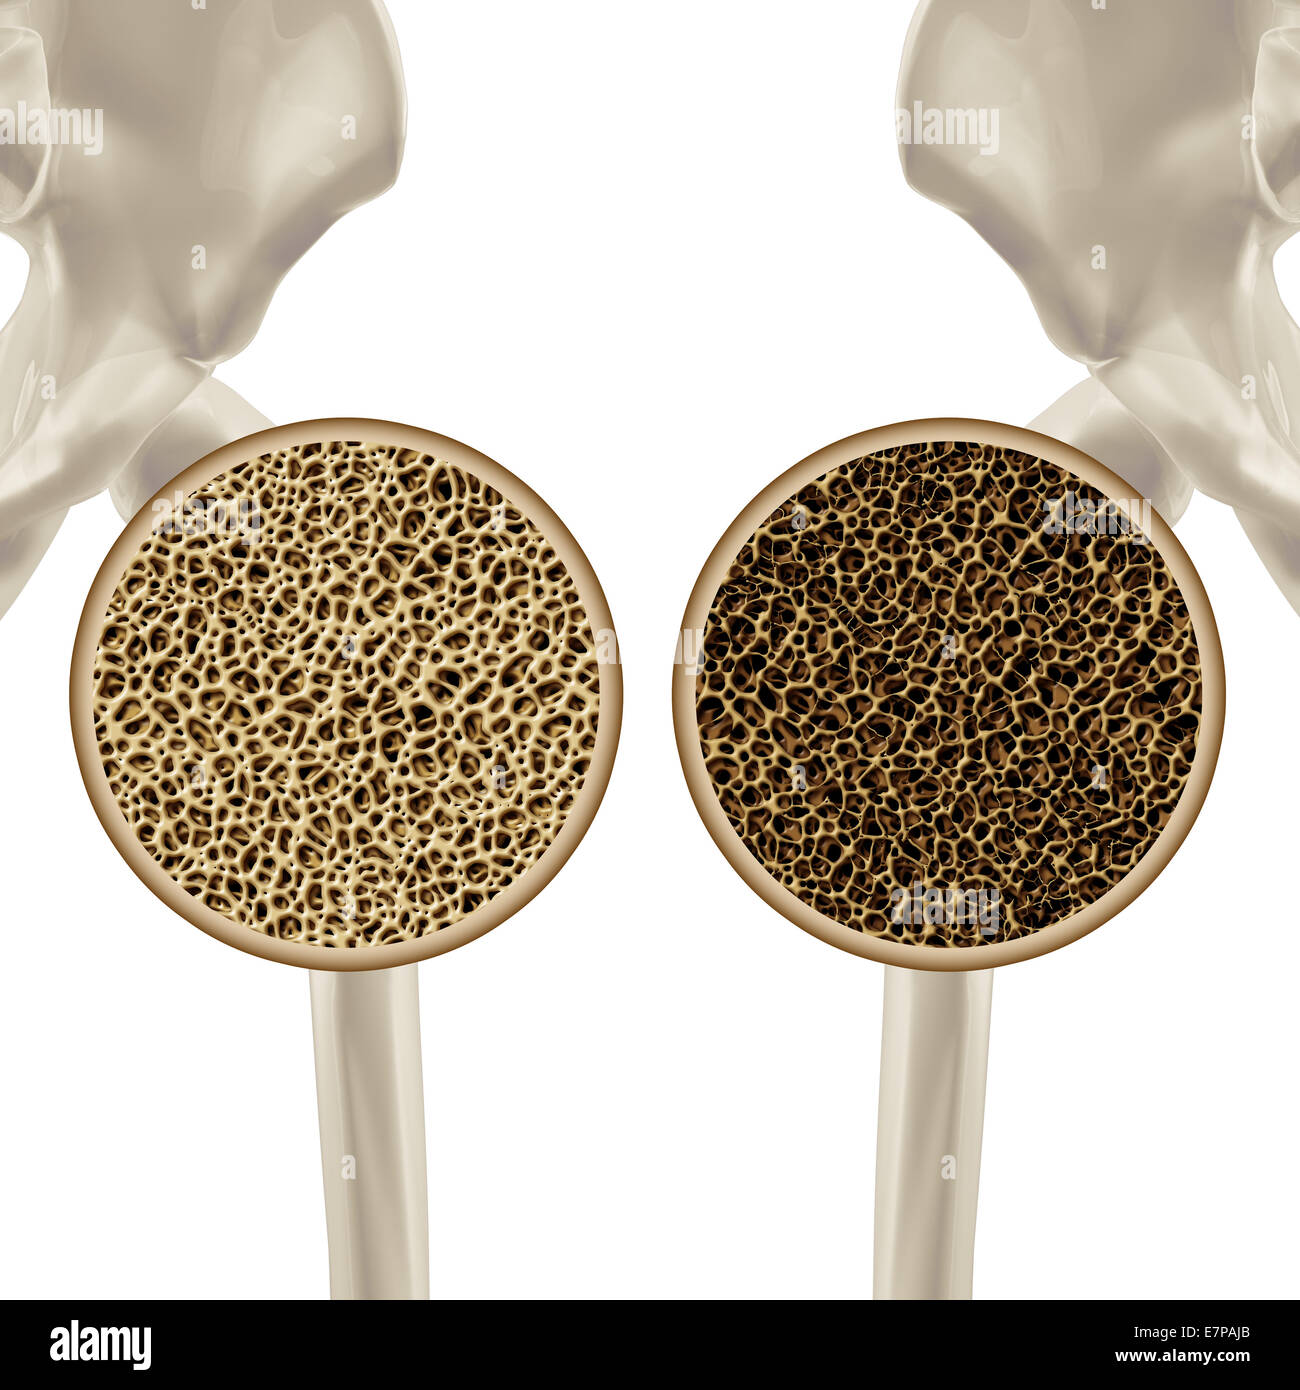 L'Osteoporosi Illustrazione medica health care concetto che mostra la scheletrico umano dell'anca come una chiusura di un sano e malsano poroso schema di osso. Foto Stock